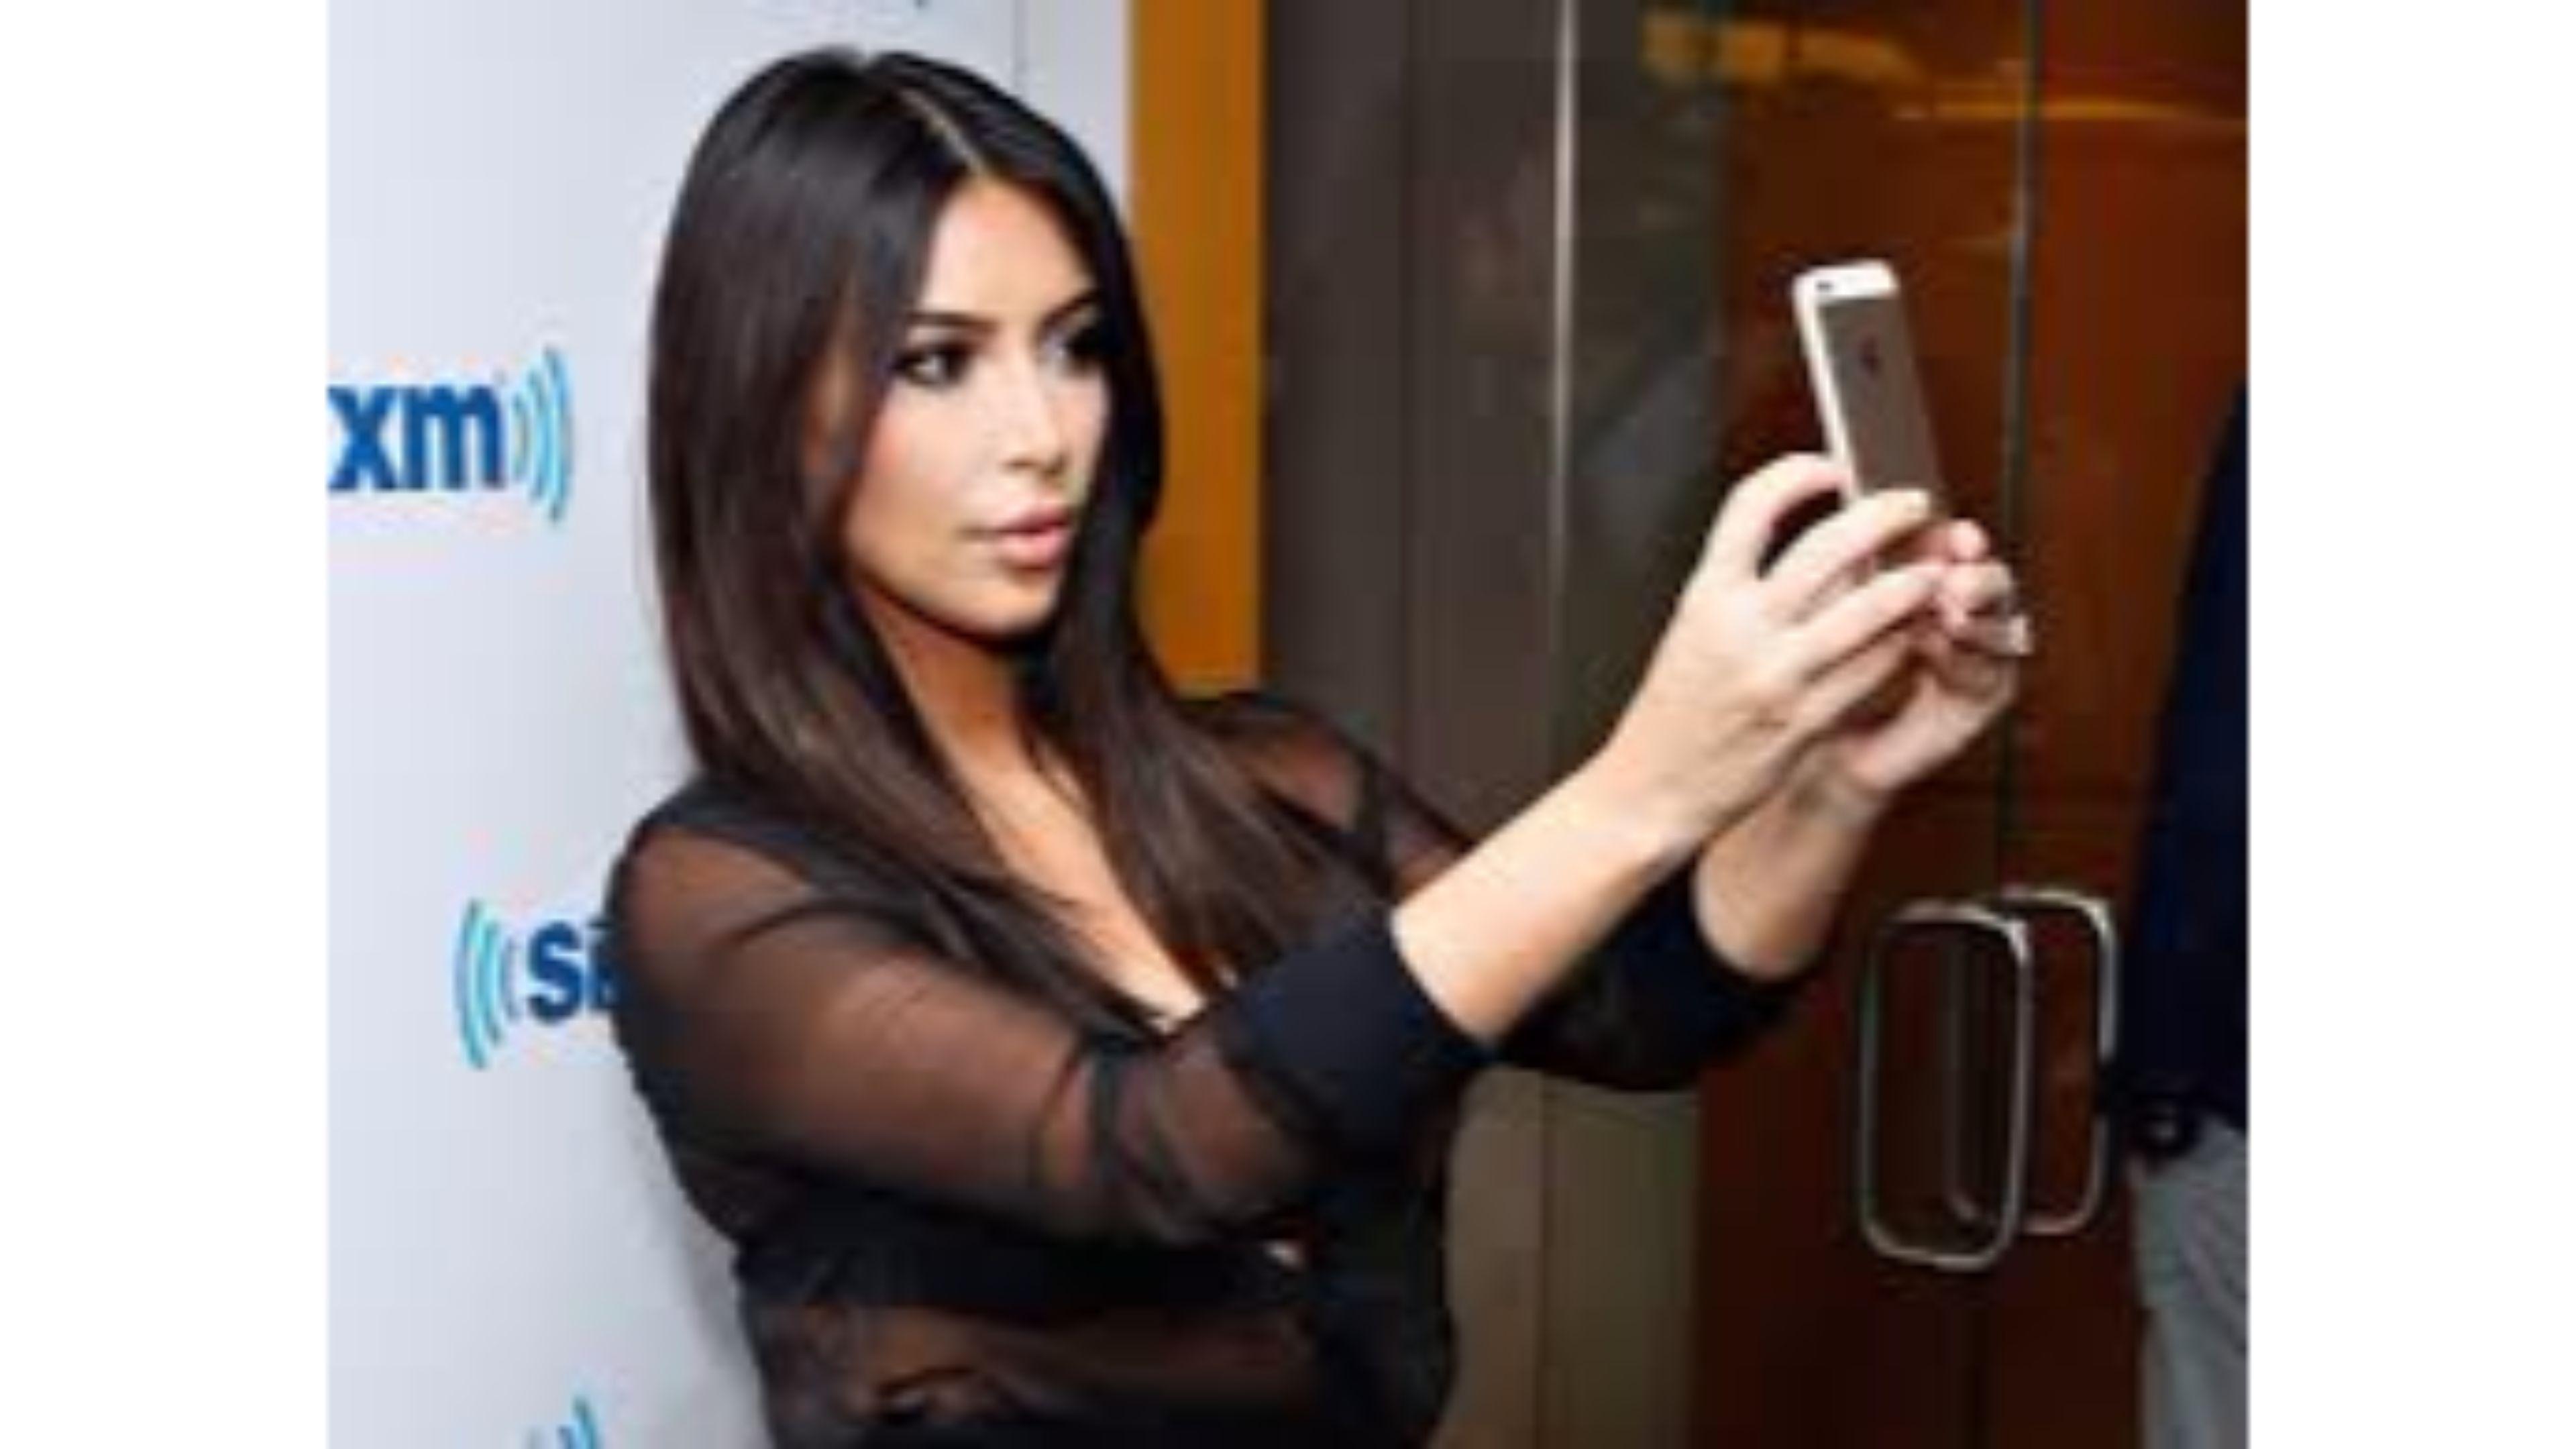 Contemporary 2016 Kim Kardashian 4K Wallpaper. Free 4K Wallpaper